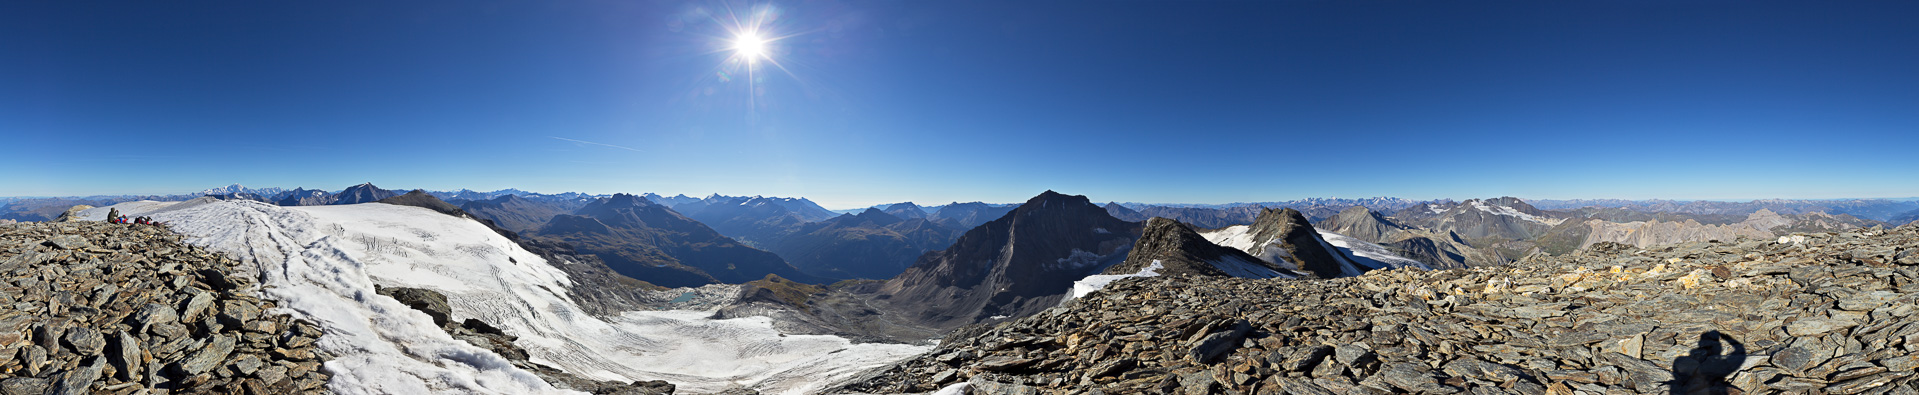 Gipfelpanorama mit Mont Blanc, allen Bergen der Vanoise und der Dauphiné.